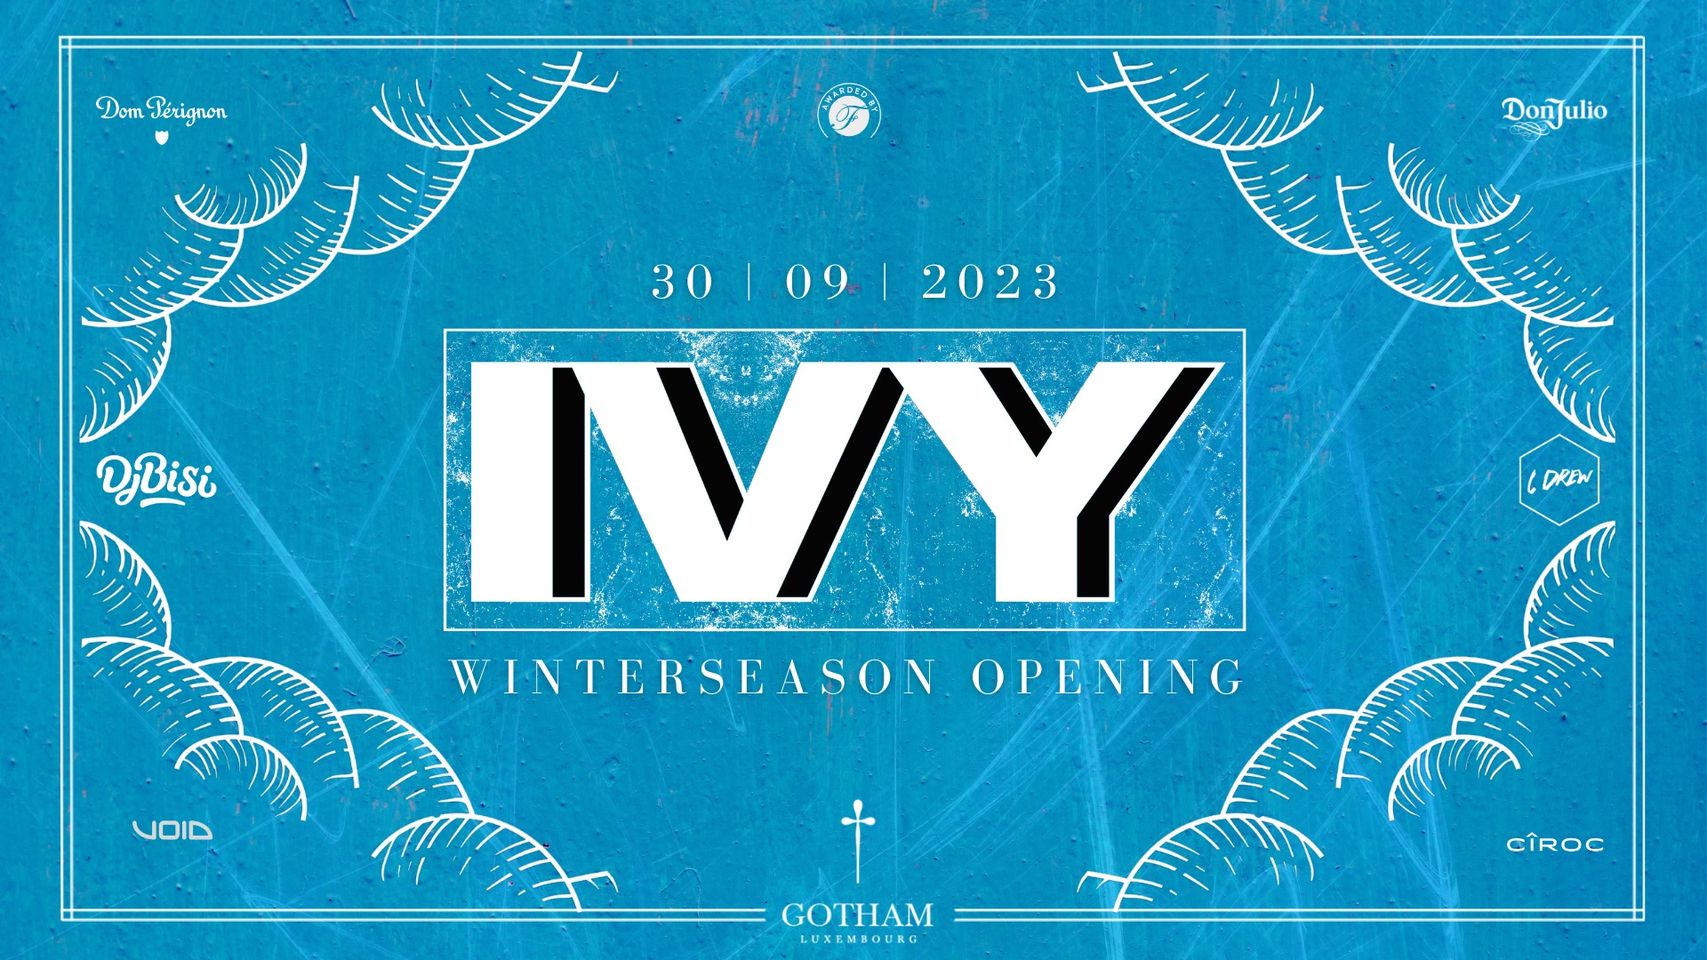 Ivy - Winterseason opening